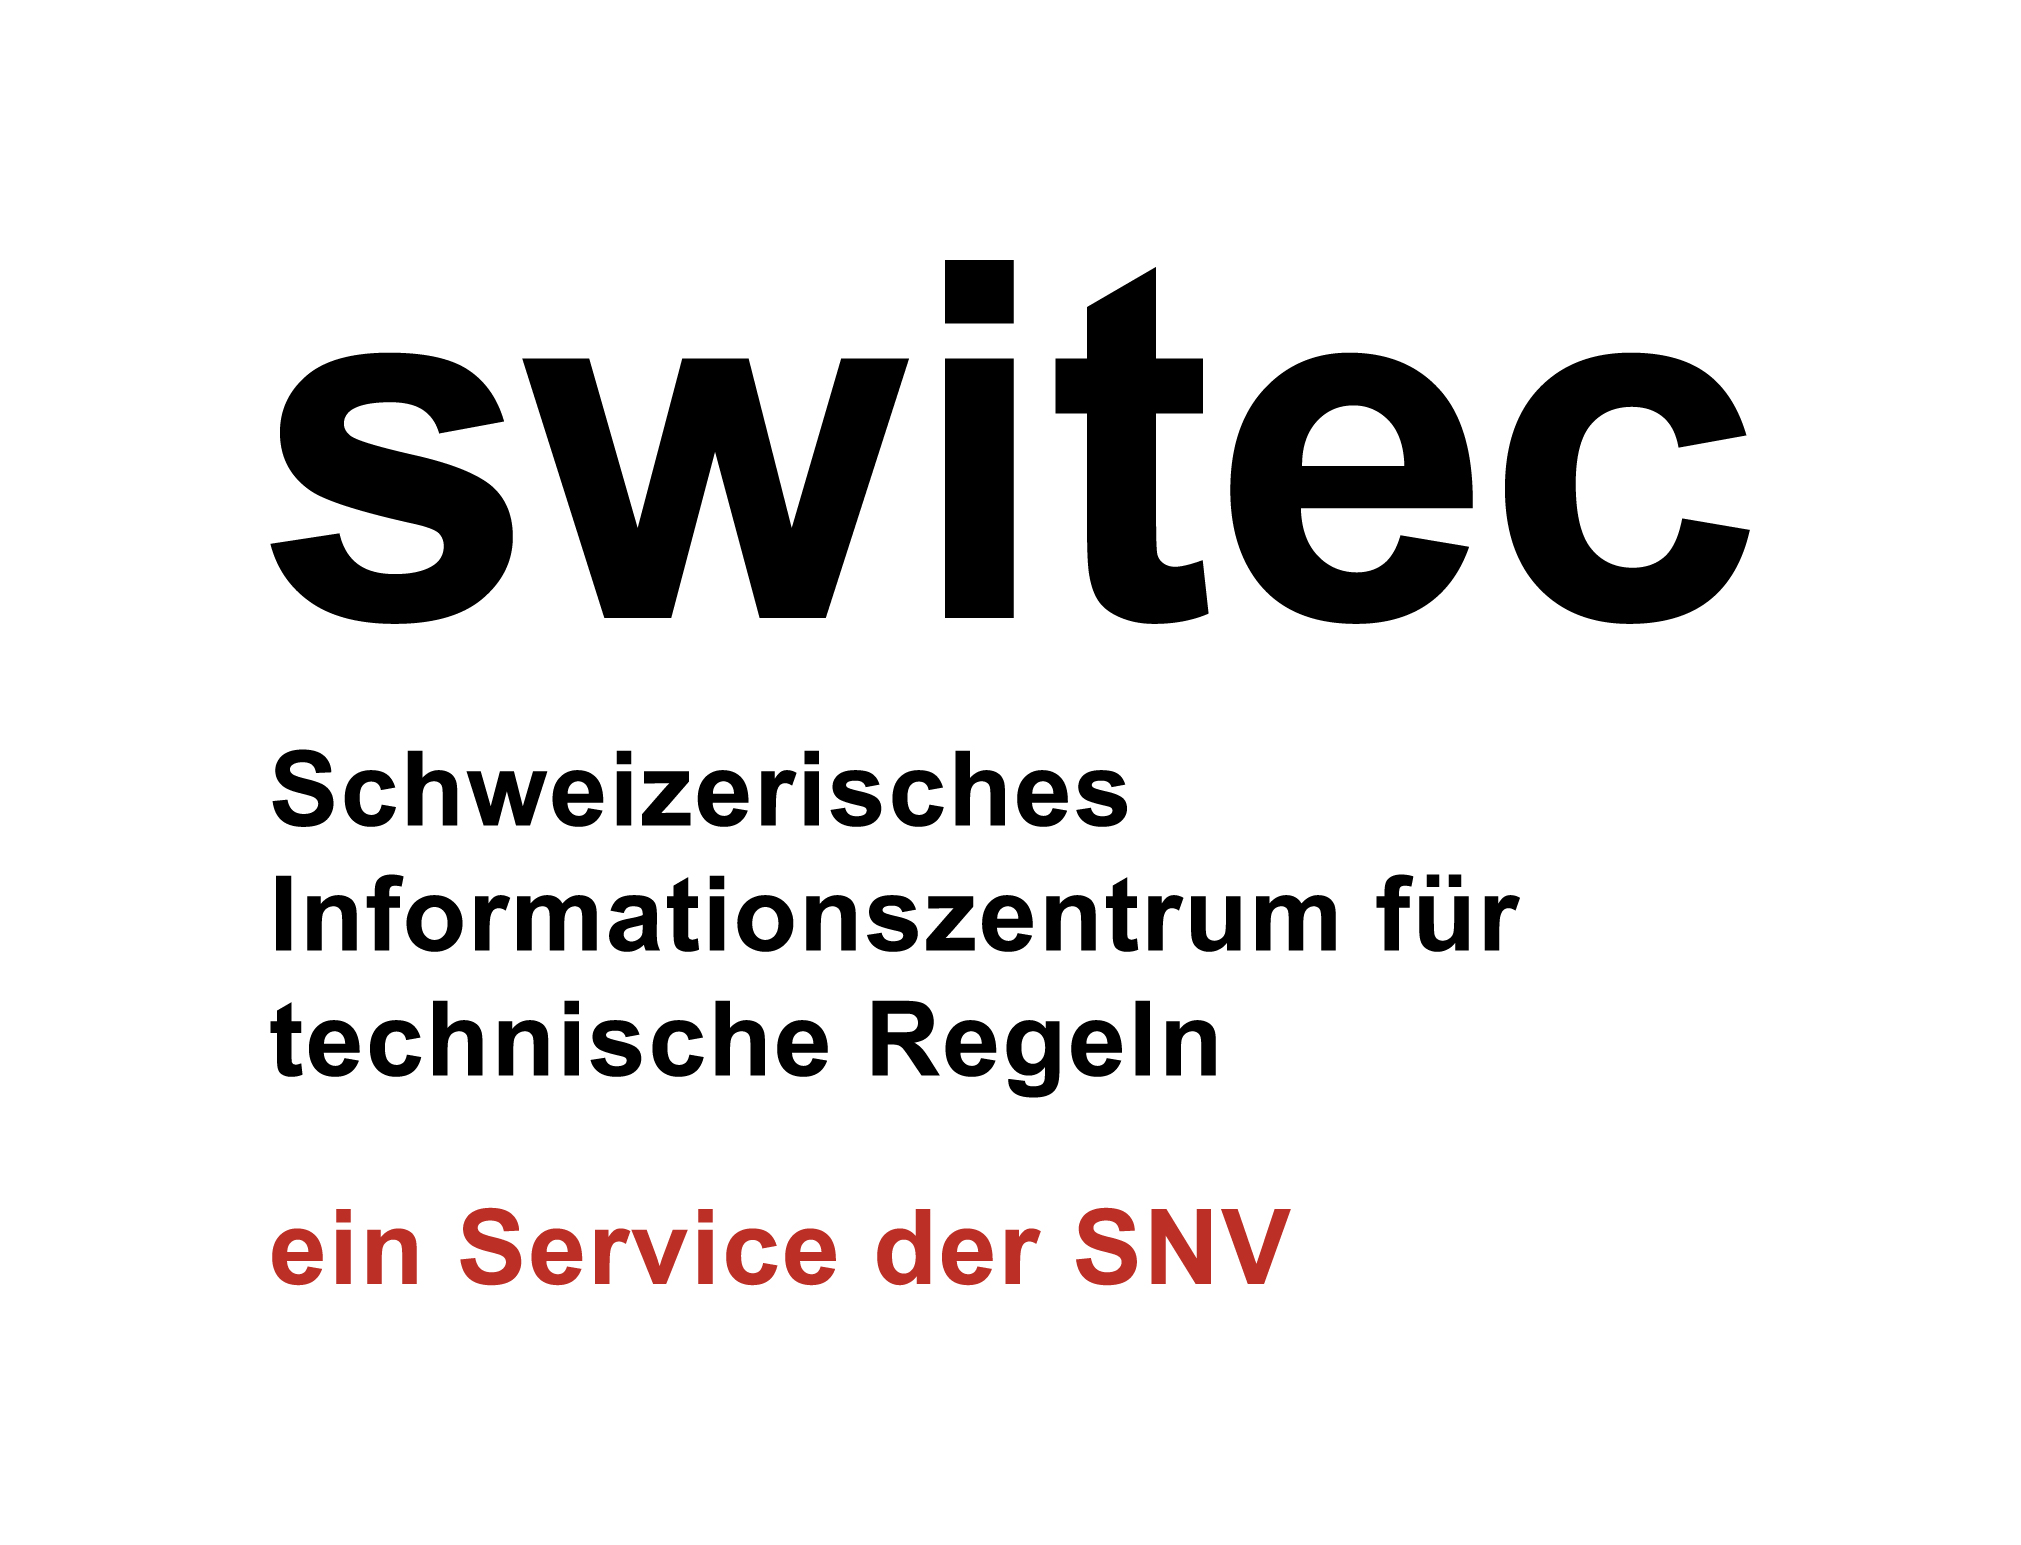 switec - Schweizerisches Informationszentrum für technische Regeln